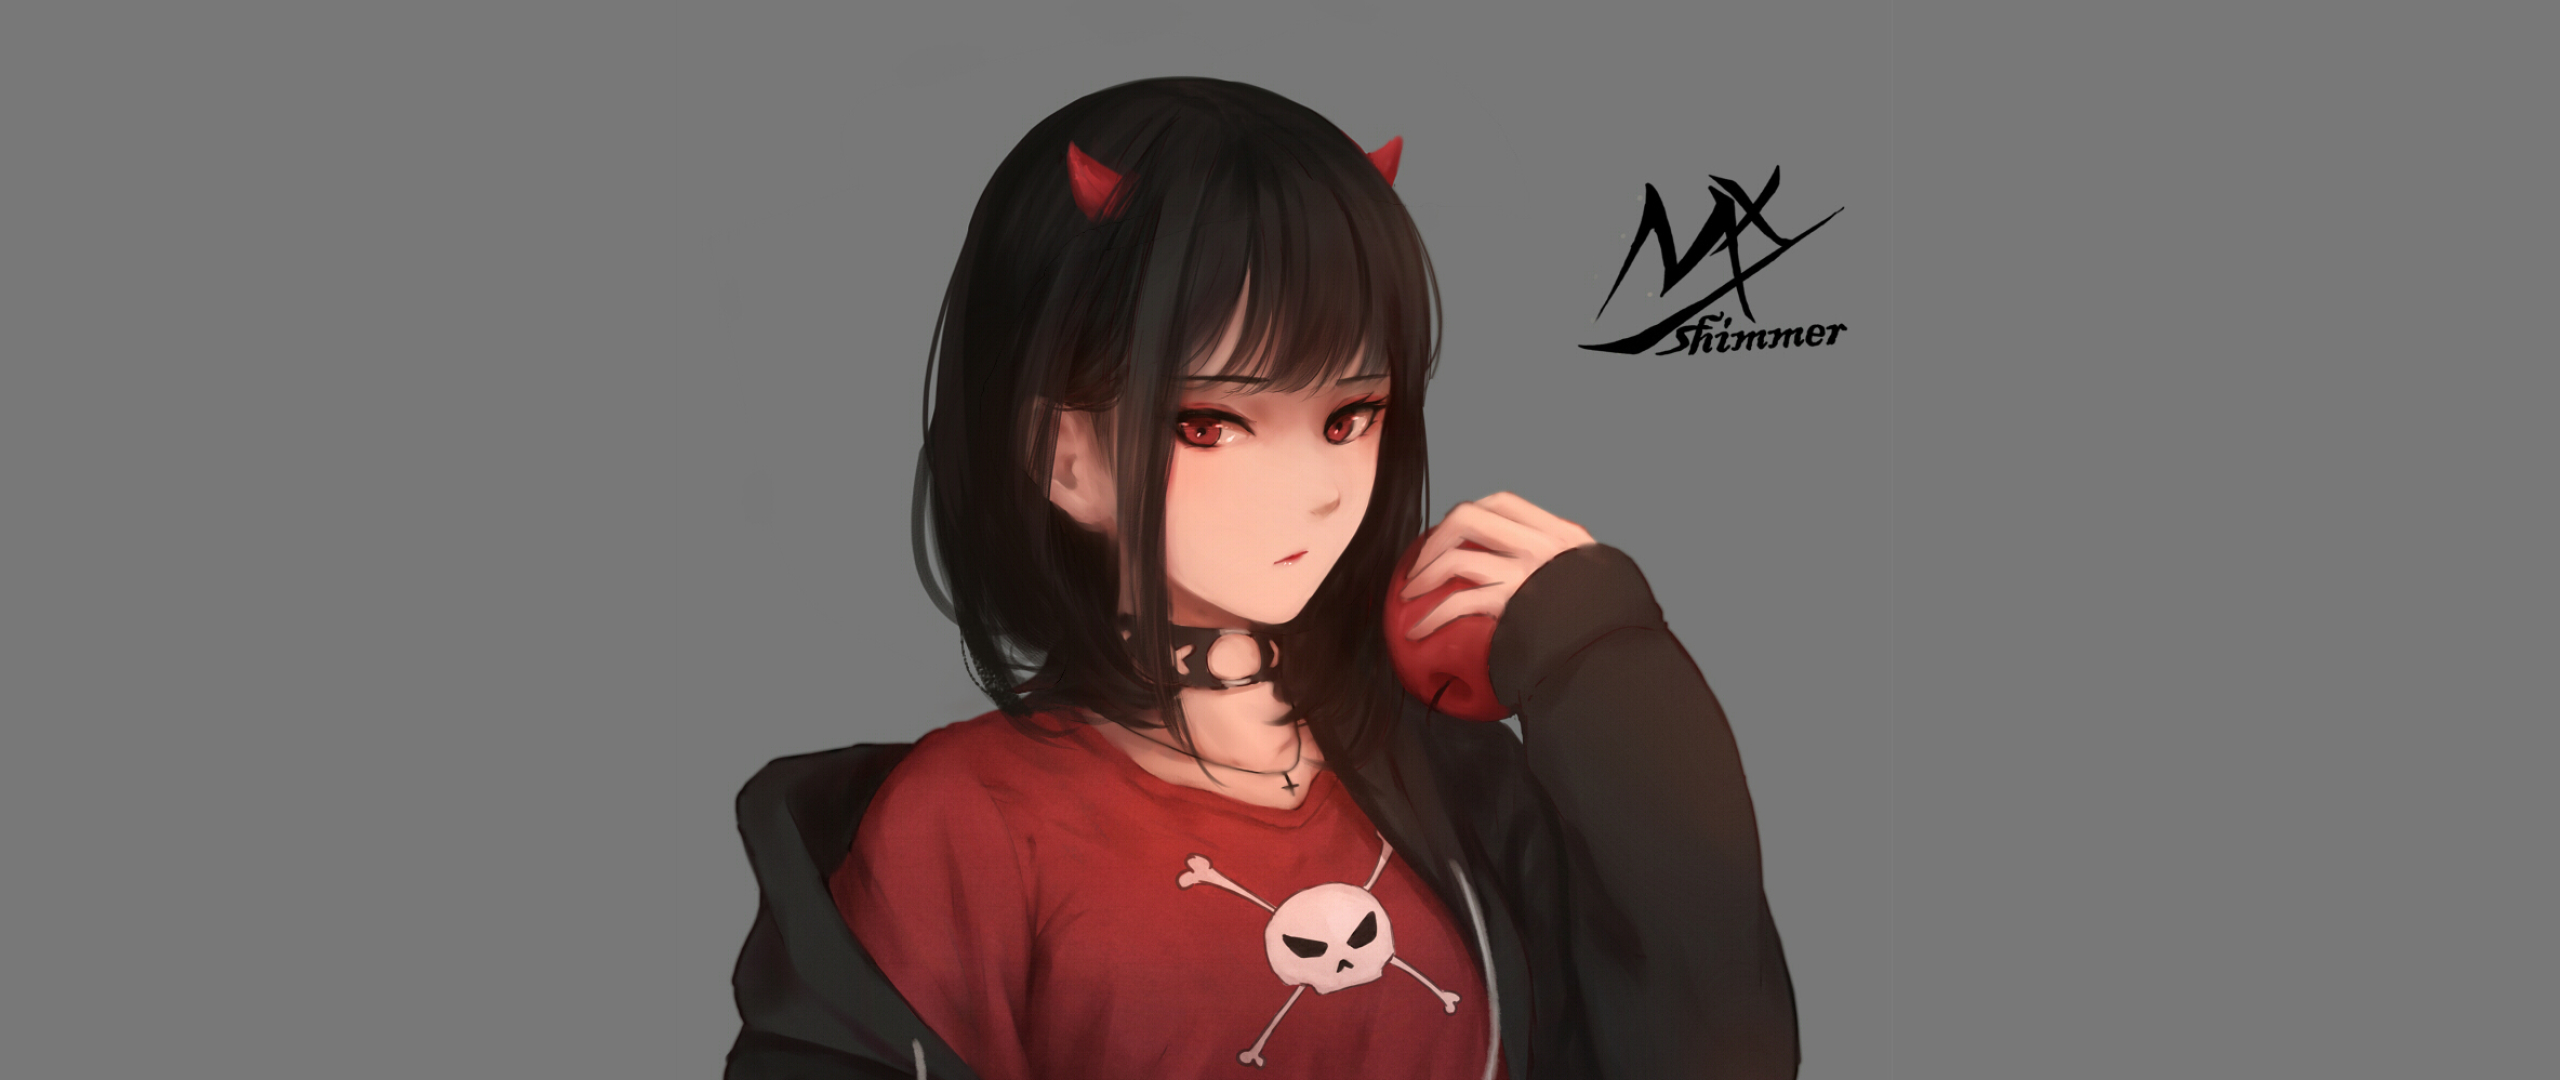 Anime Wallpaper Girl Demon , HD Wallpaper & Backgrounds